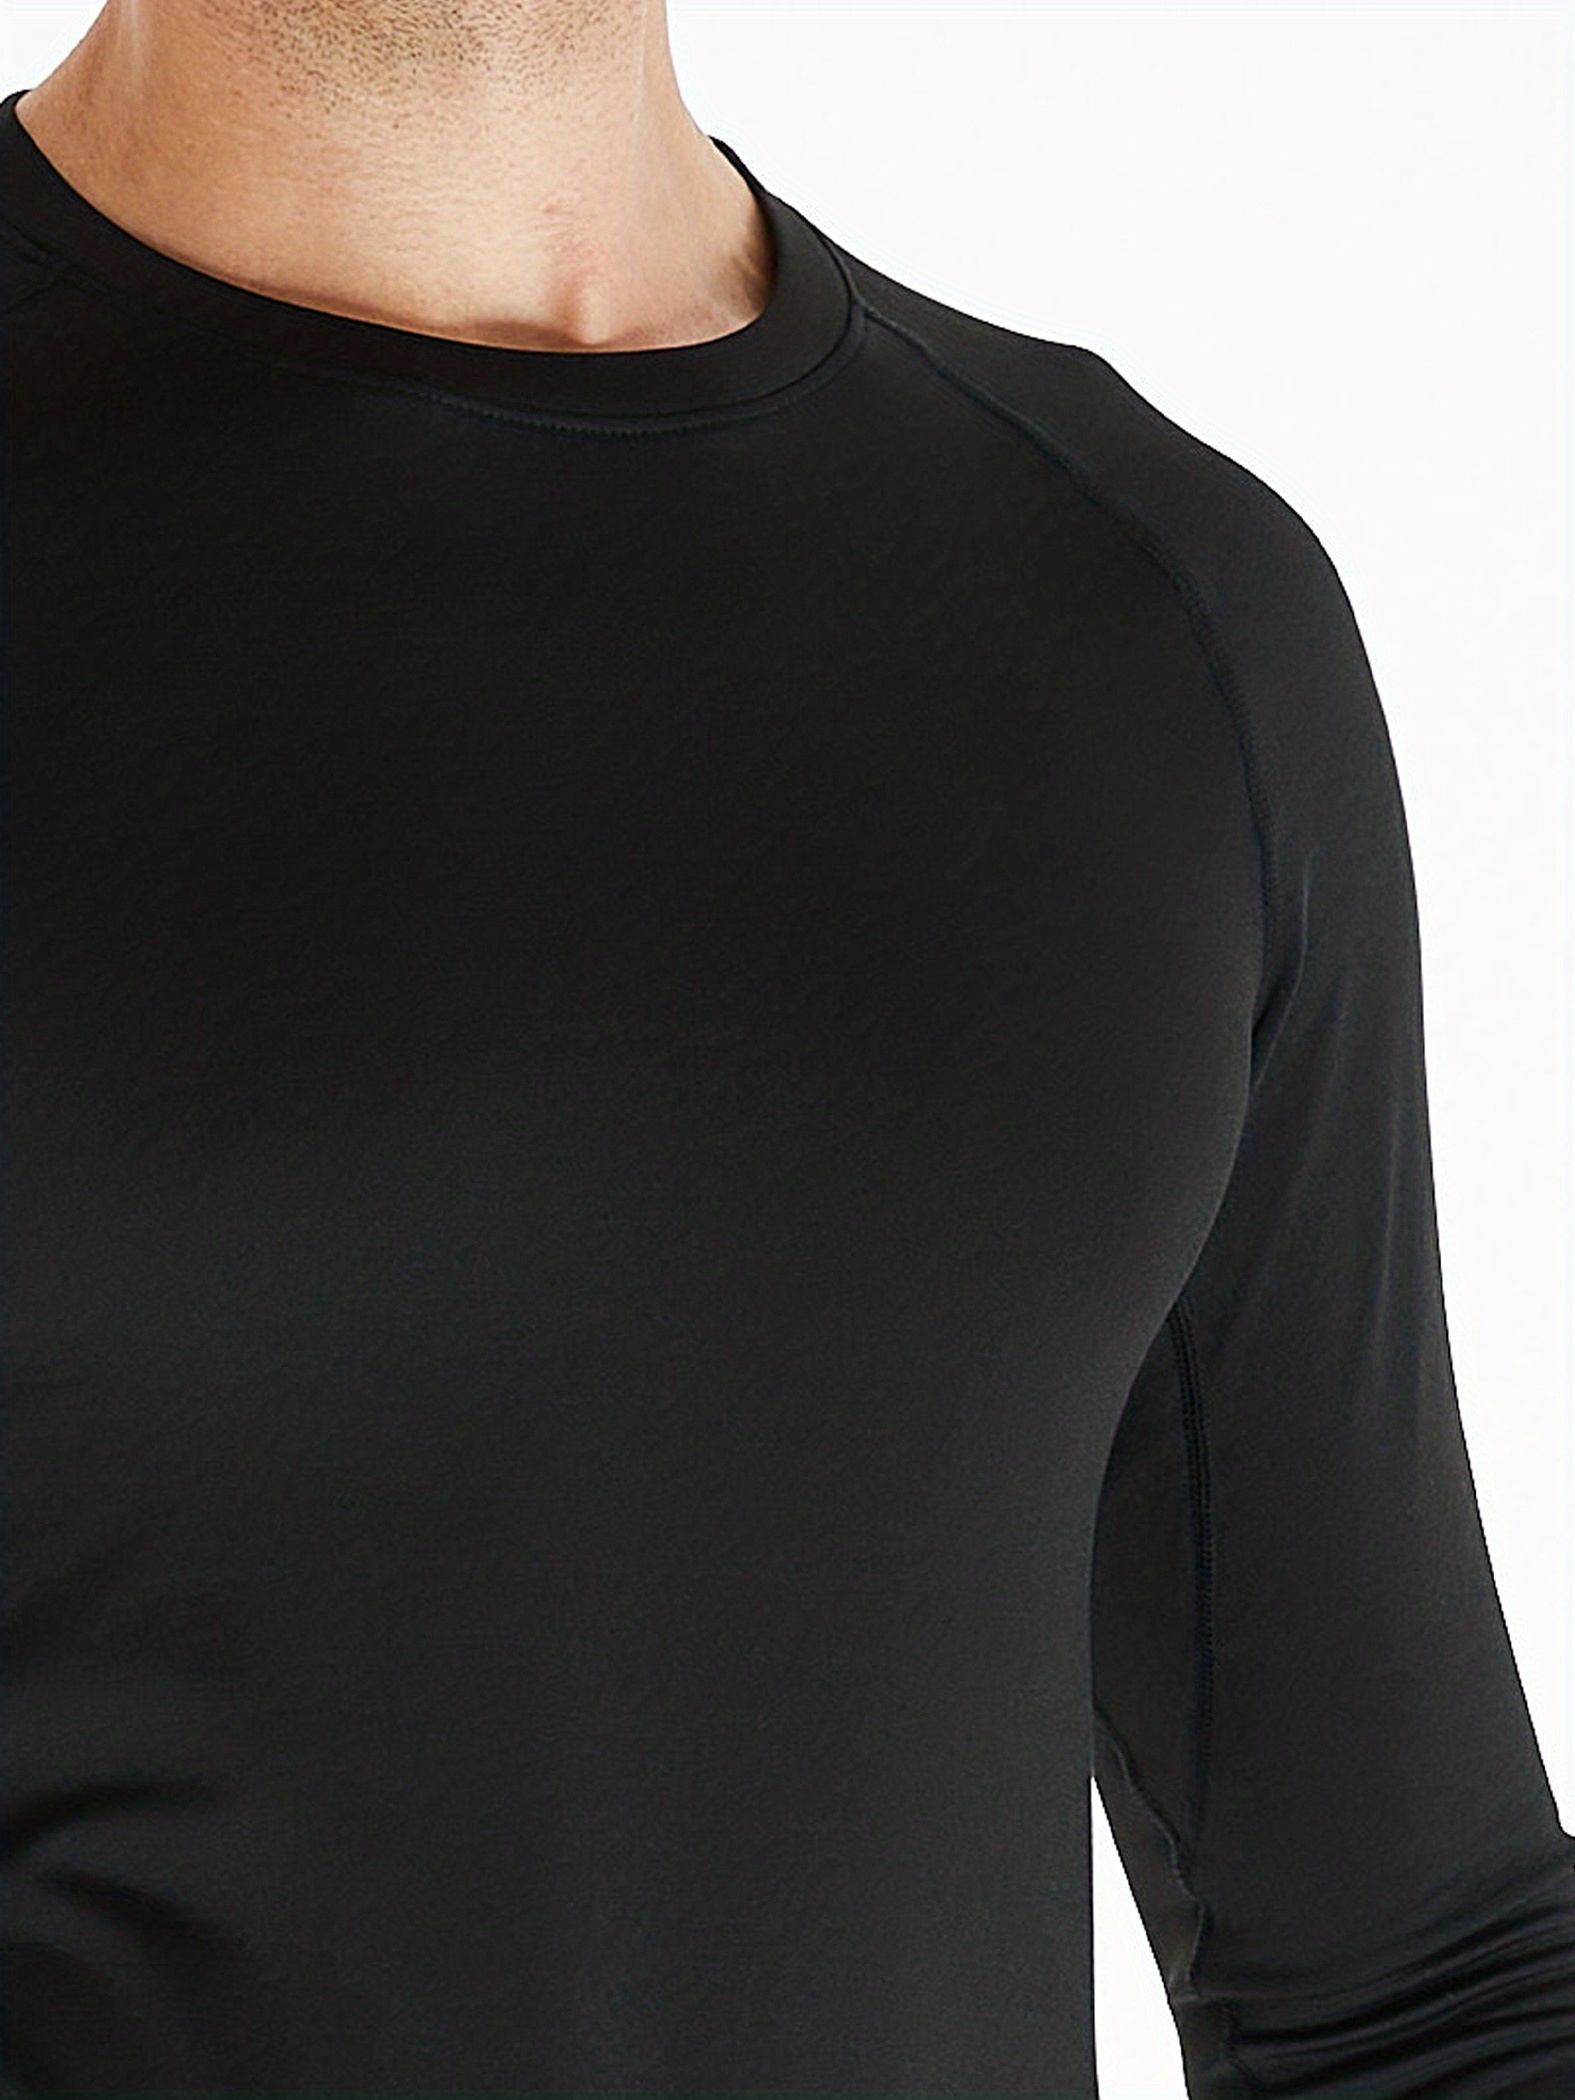 HOPLYNN 2 peças Camisas masculinas de compressão com gola - Temu